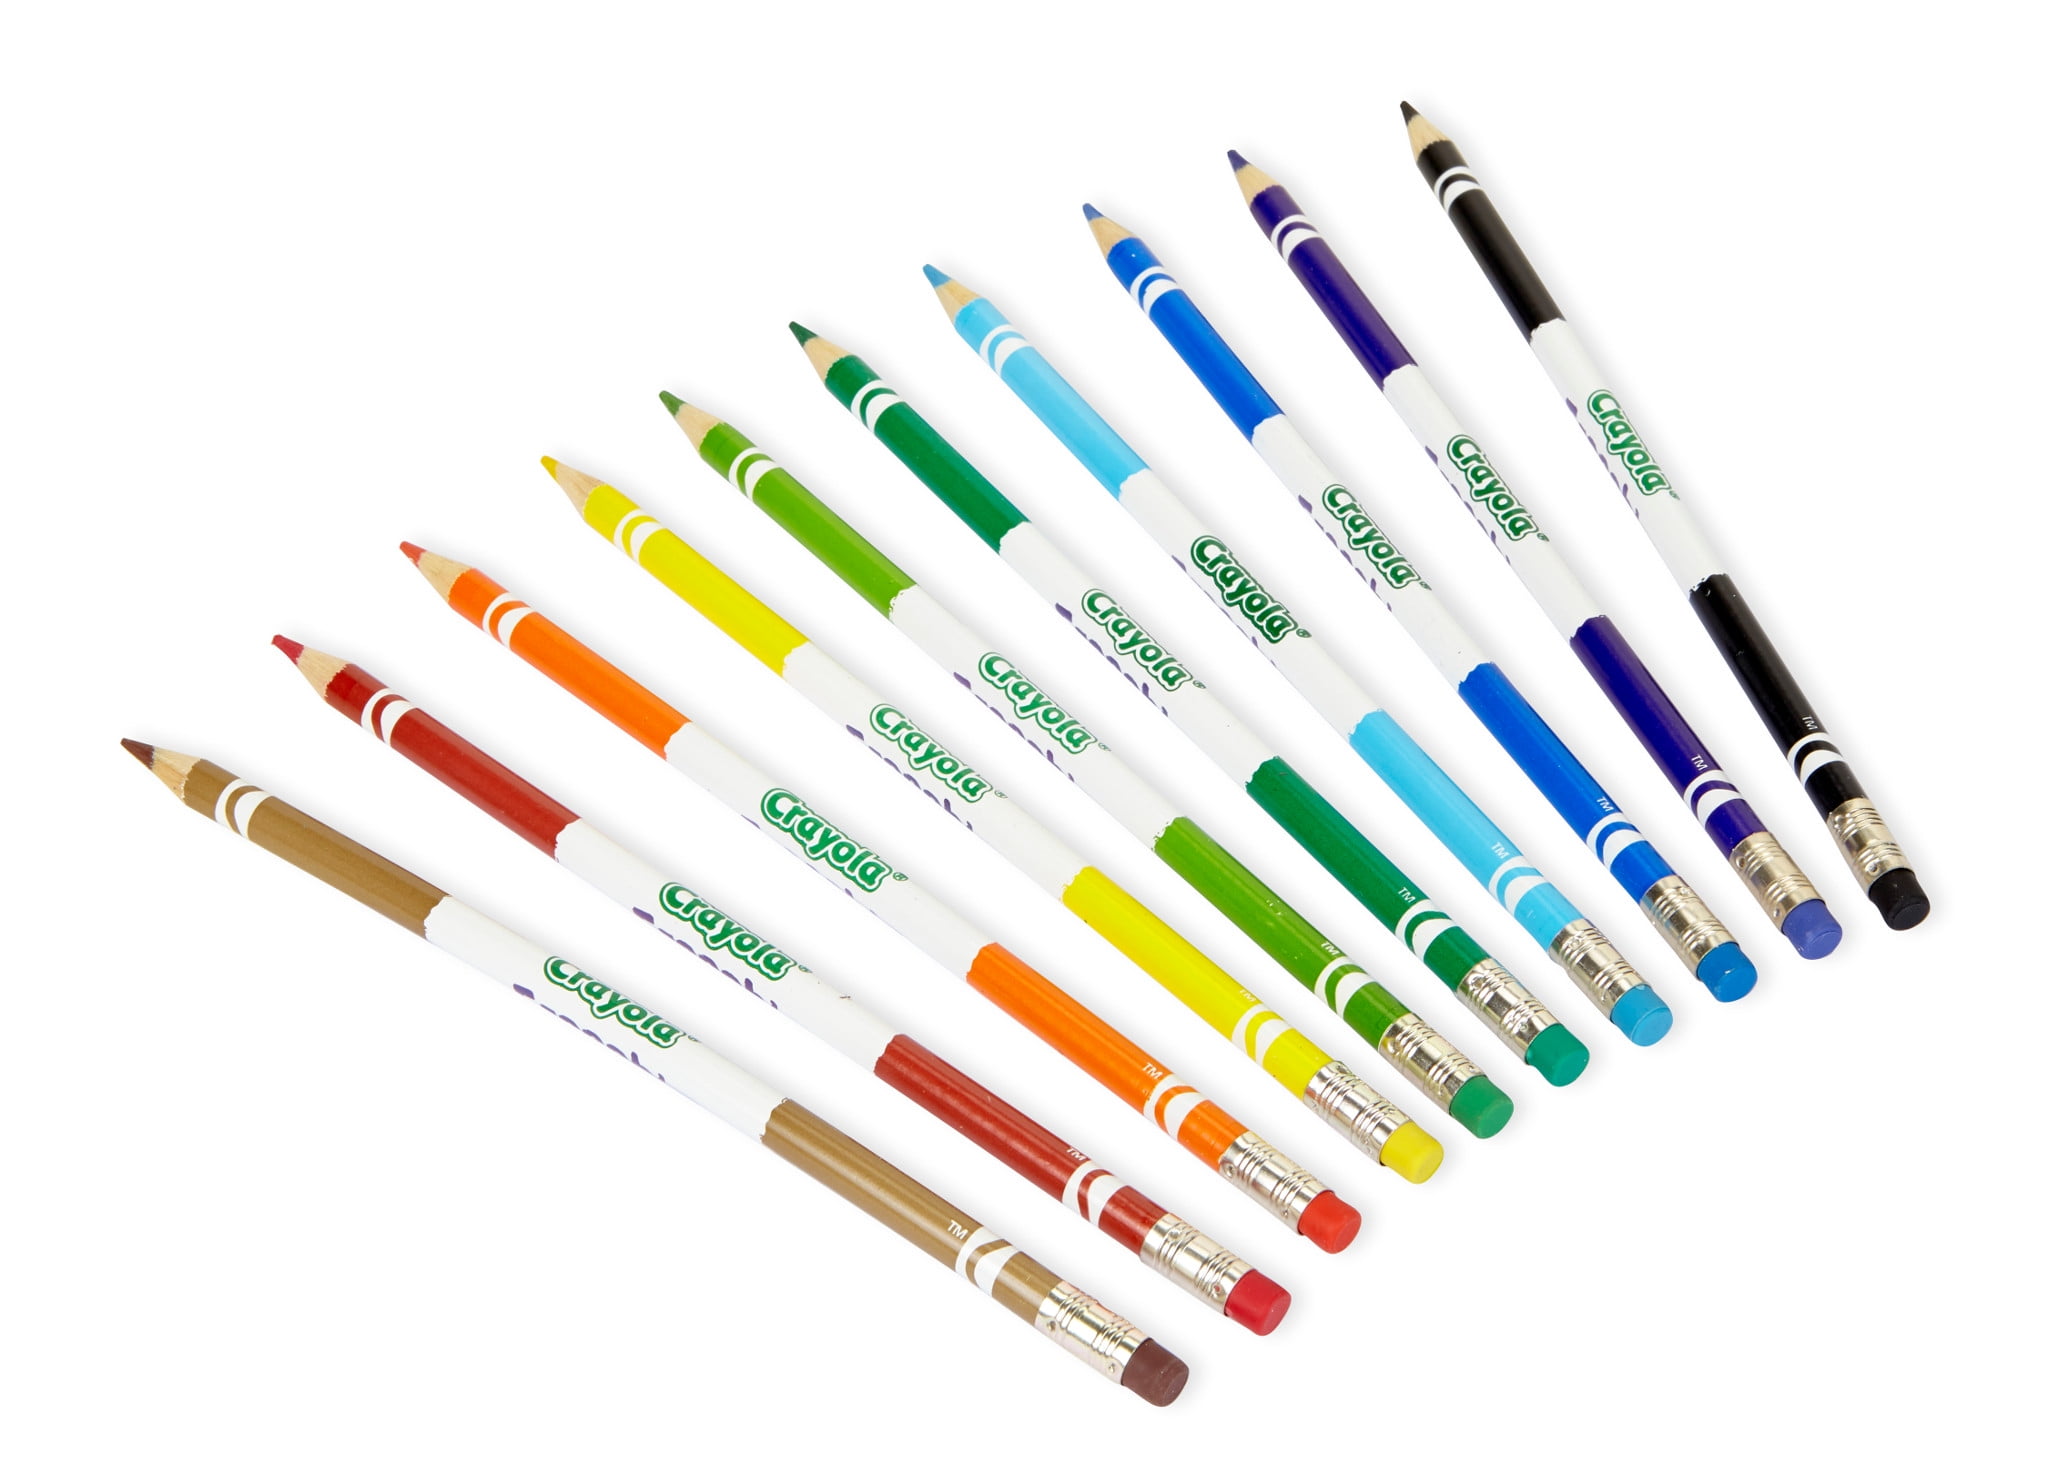  Crayola 68-4410 Erasable Colored Pencils 10 Count - 6